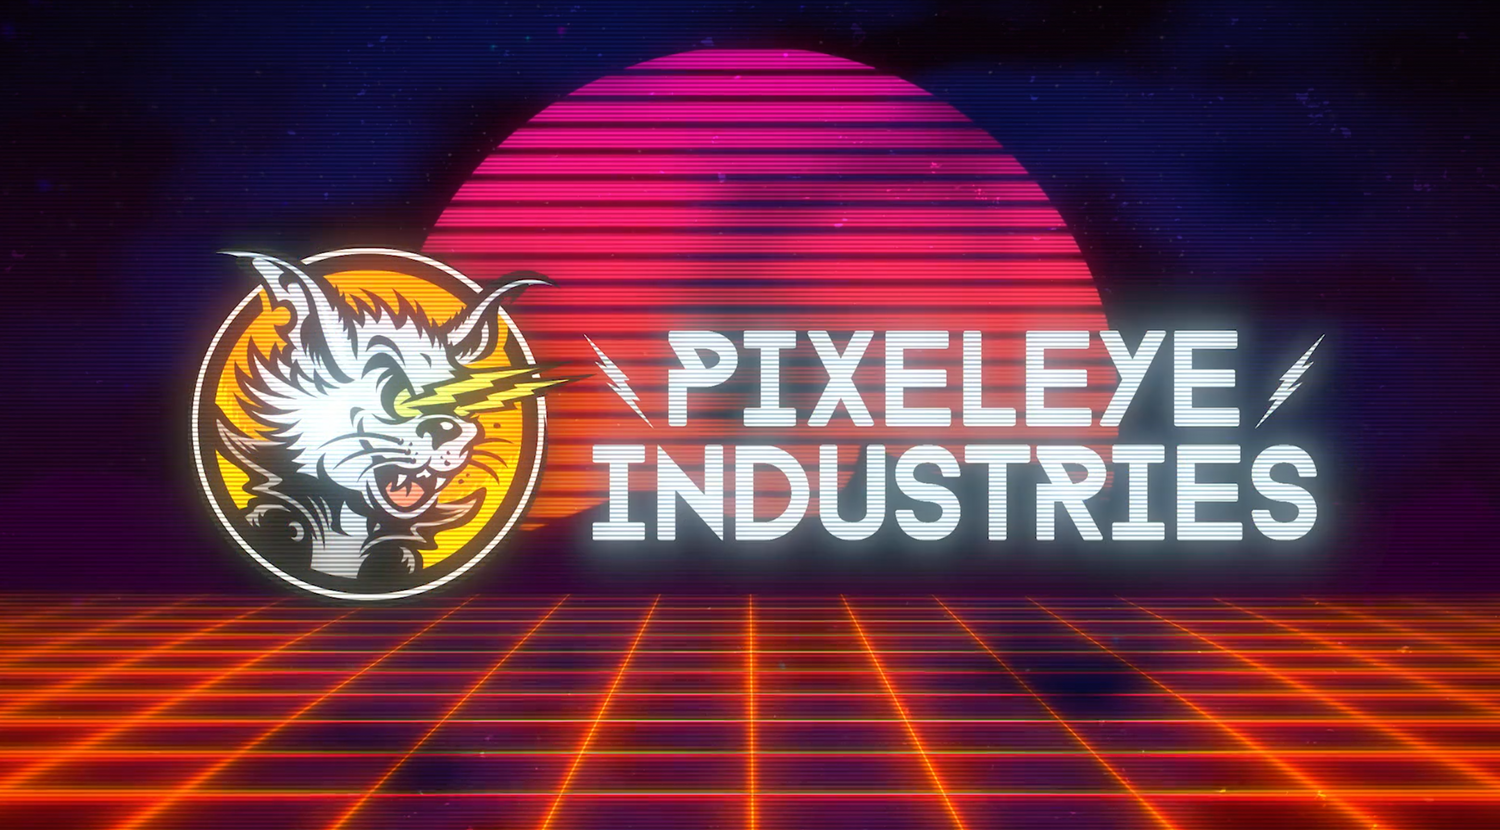 (c) Pixeleyeindustries.com